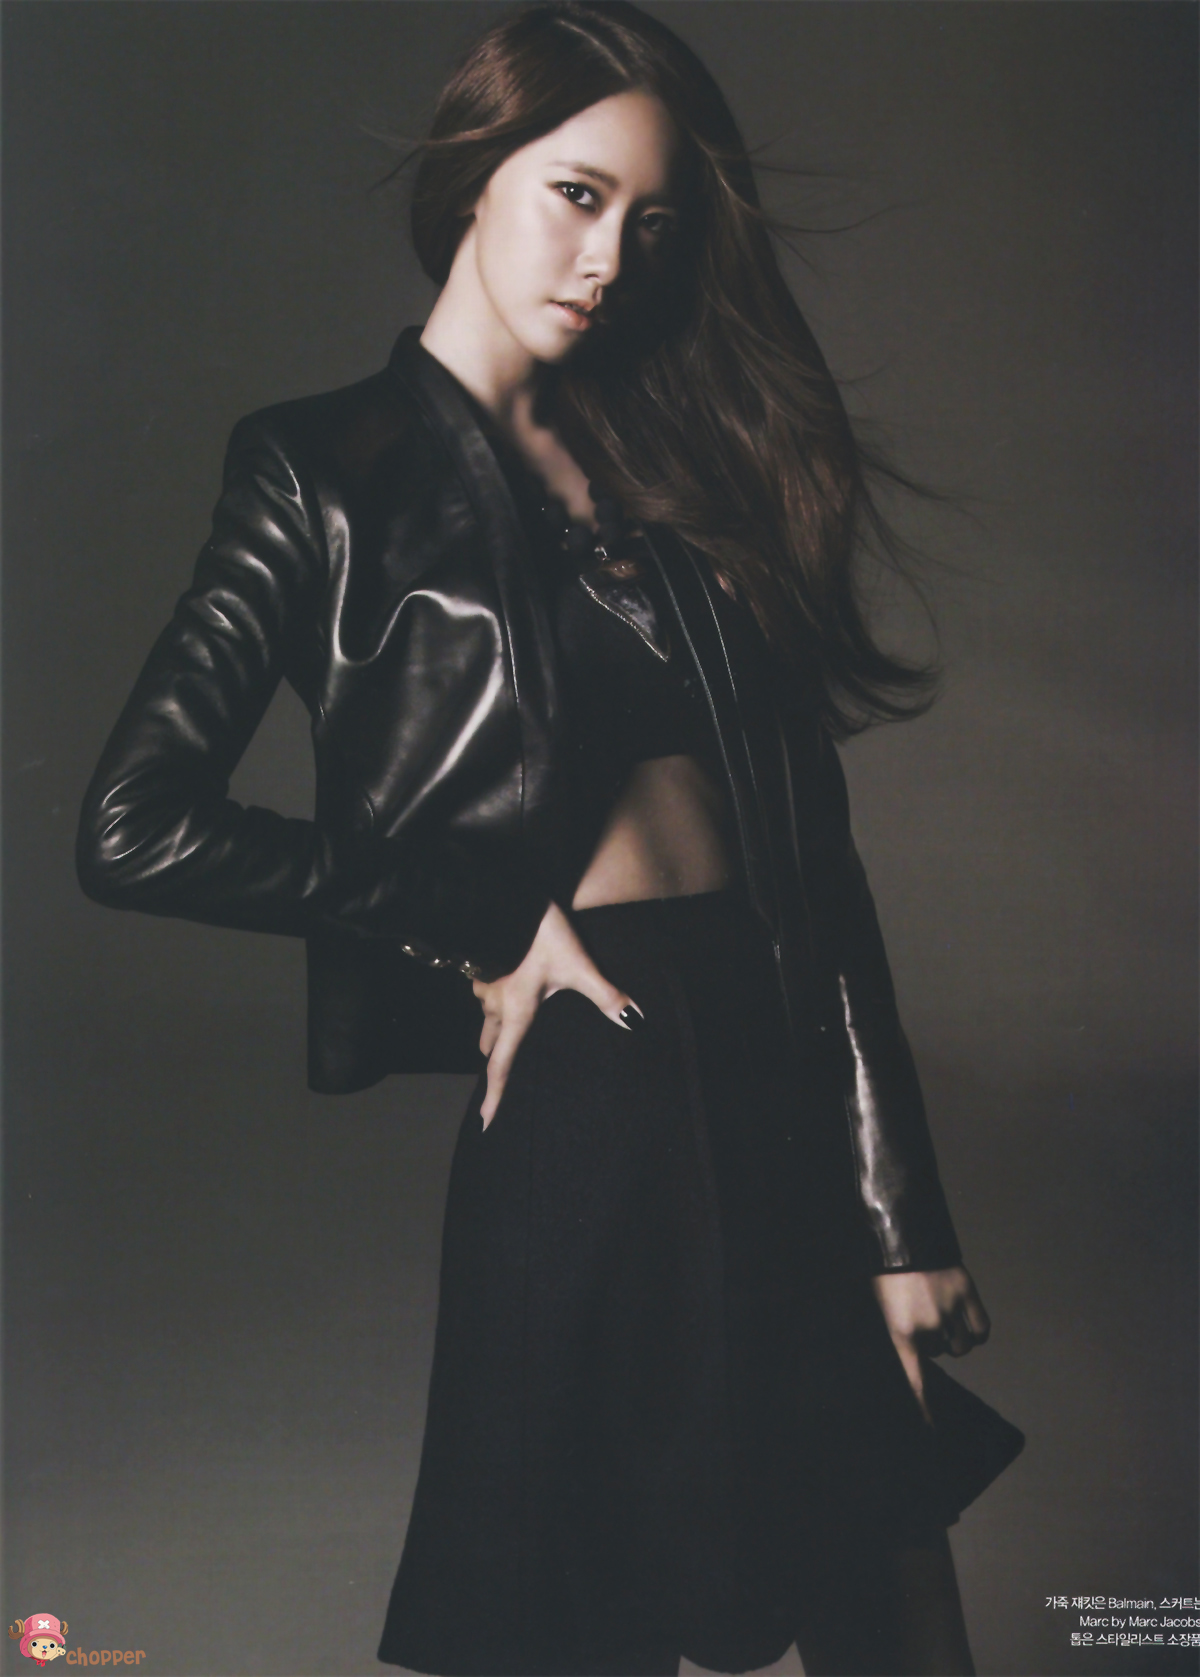 Snsd Yoona Harpers Bazaar Magazine